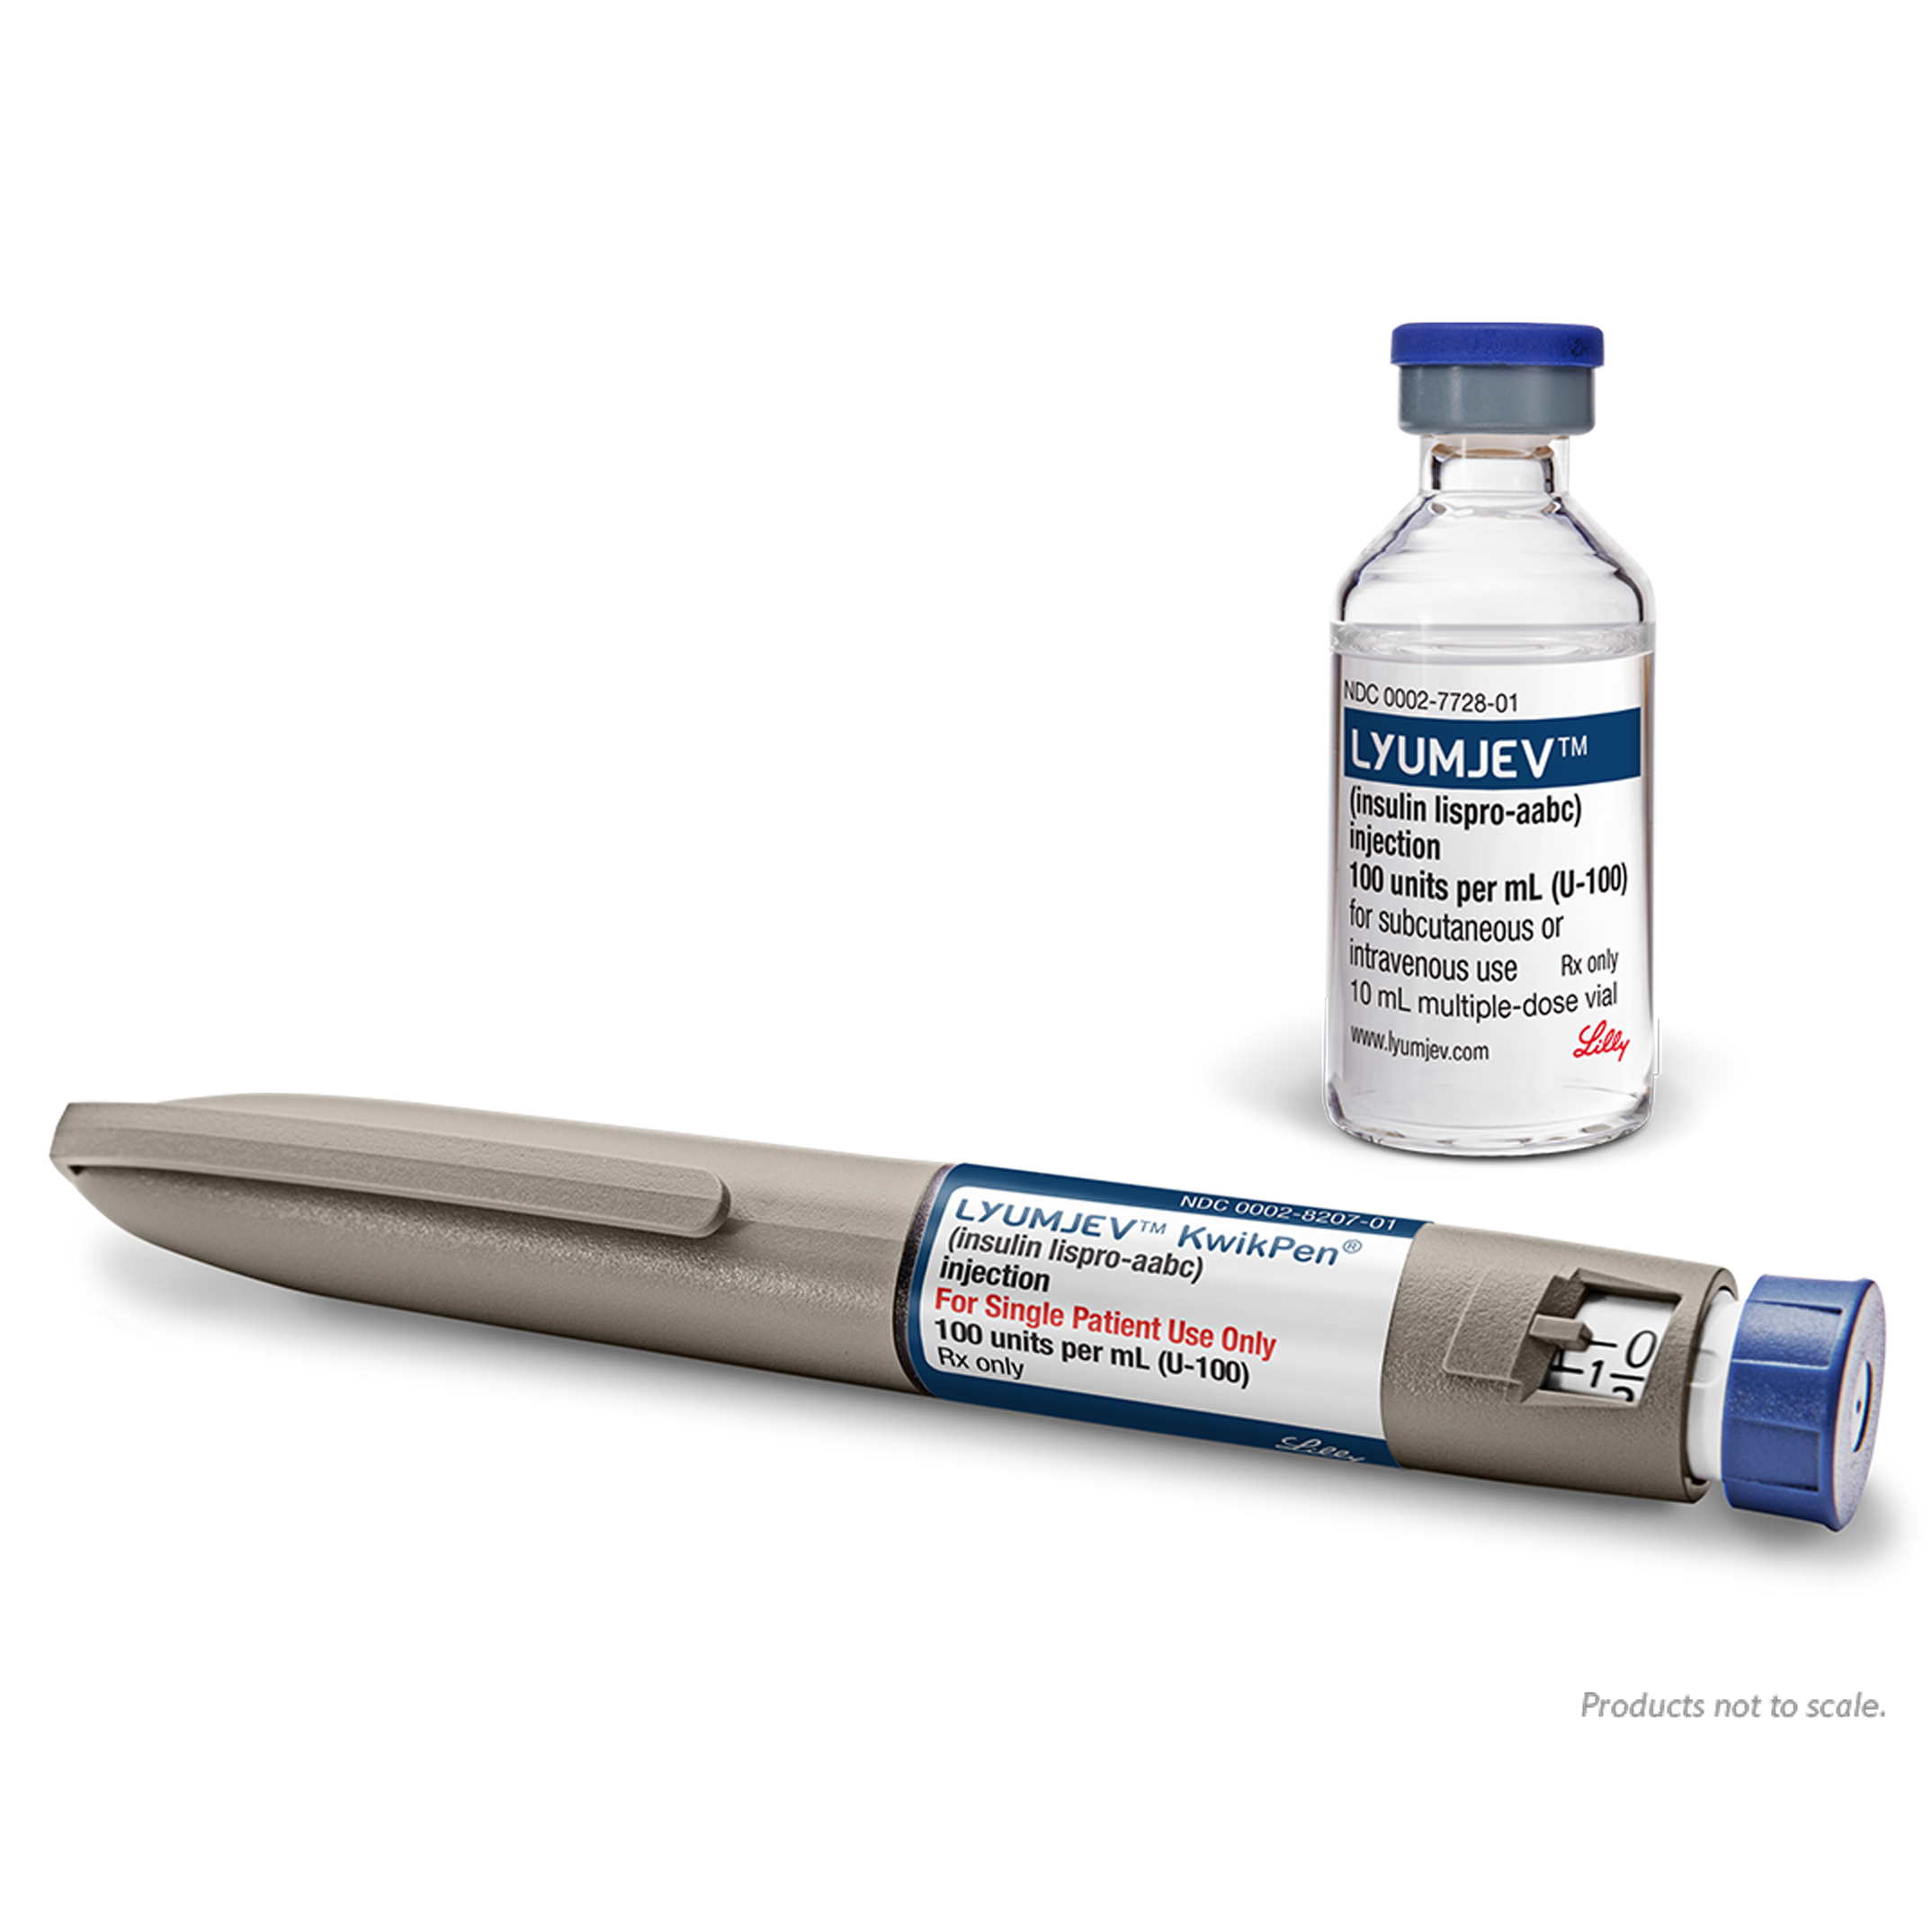 Lyumjev™ (инсулин лизпро-aabc) - новый аналог инсулина ультра-короткого .